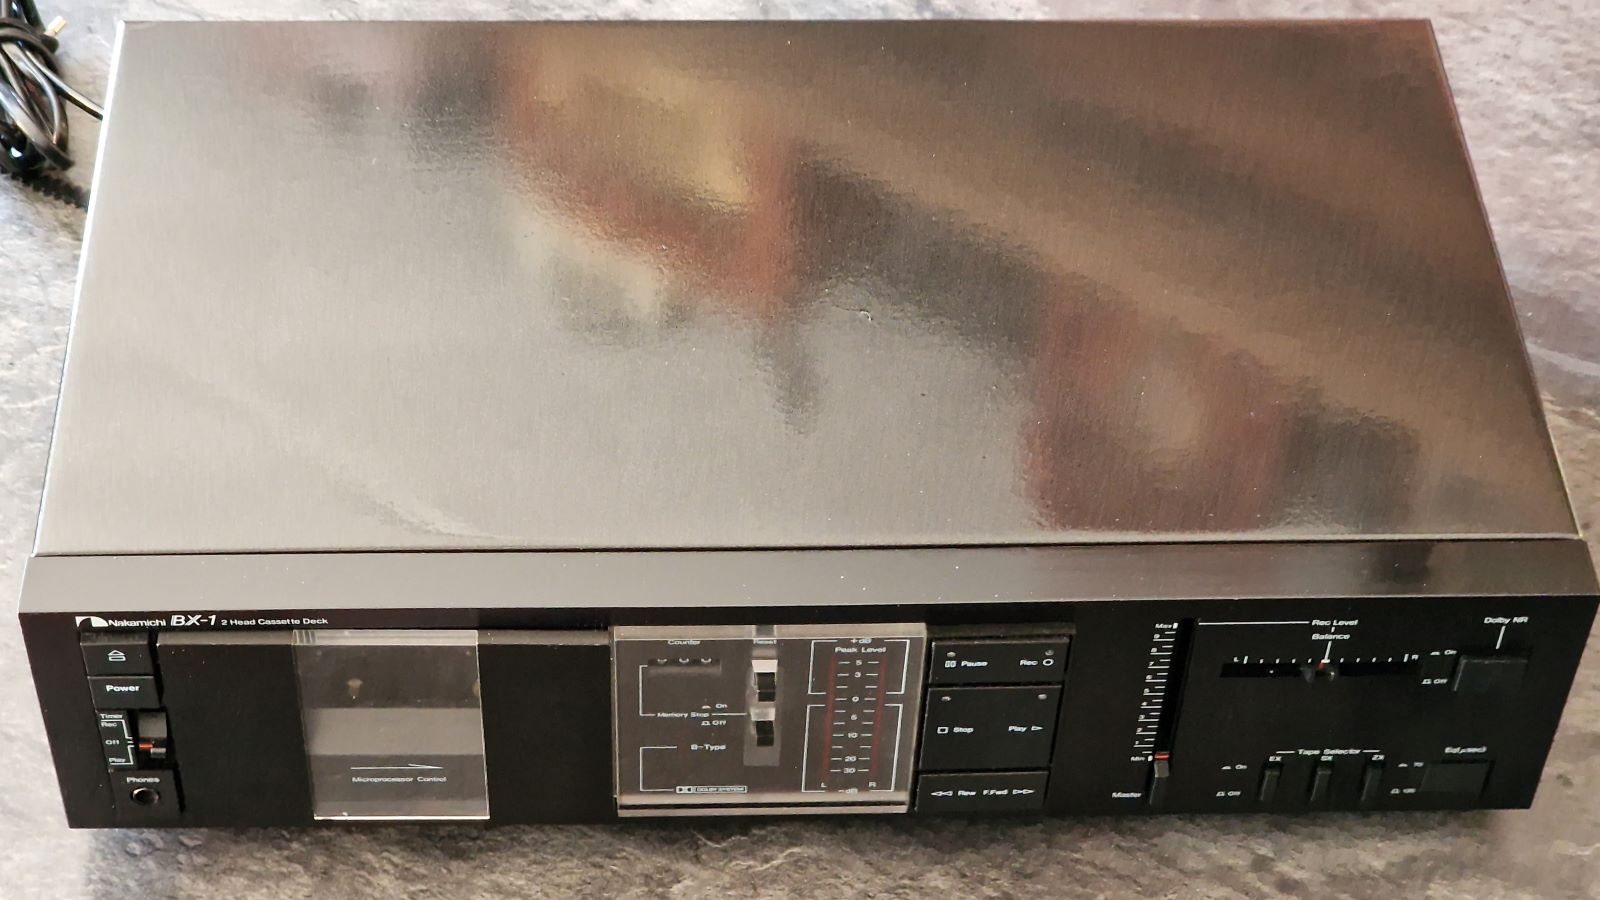 Nakamichi BX-1 stereo cassettedeck